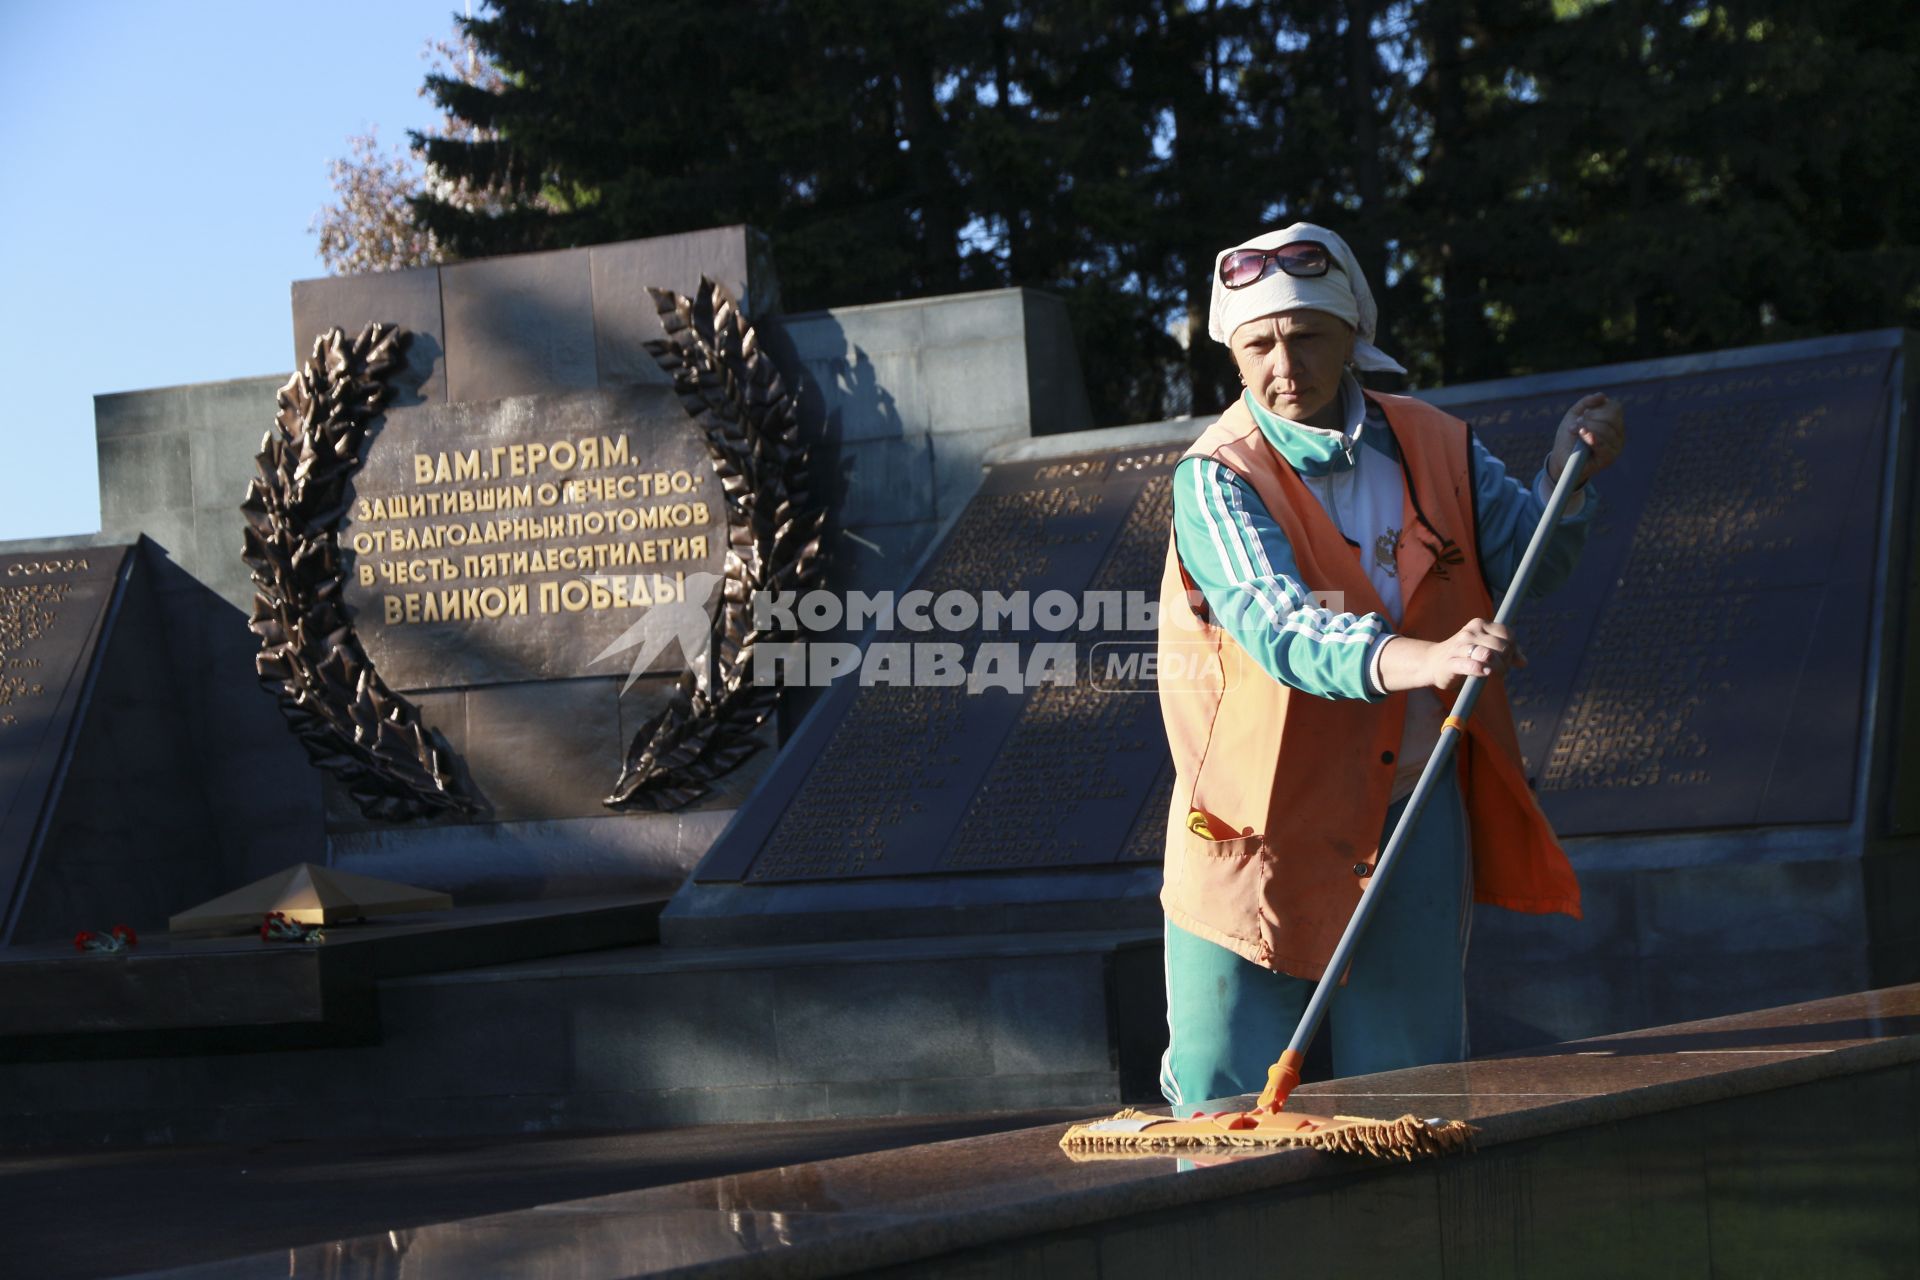 Барнаул. Сотрудник коммунальных служб наводит порядок  у мемориала защитникам отечества .